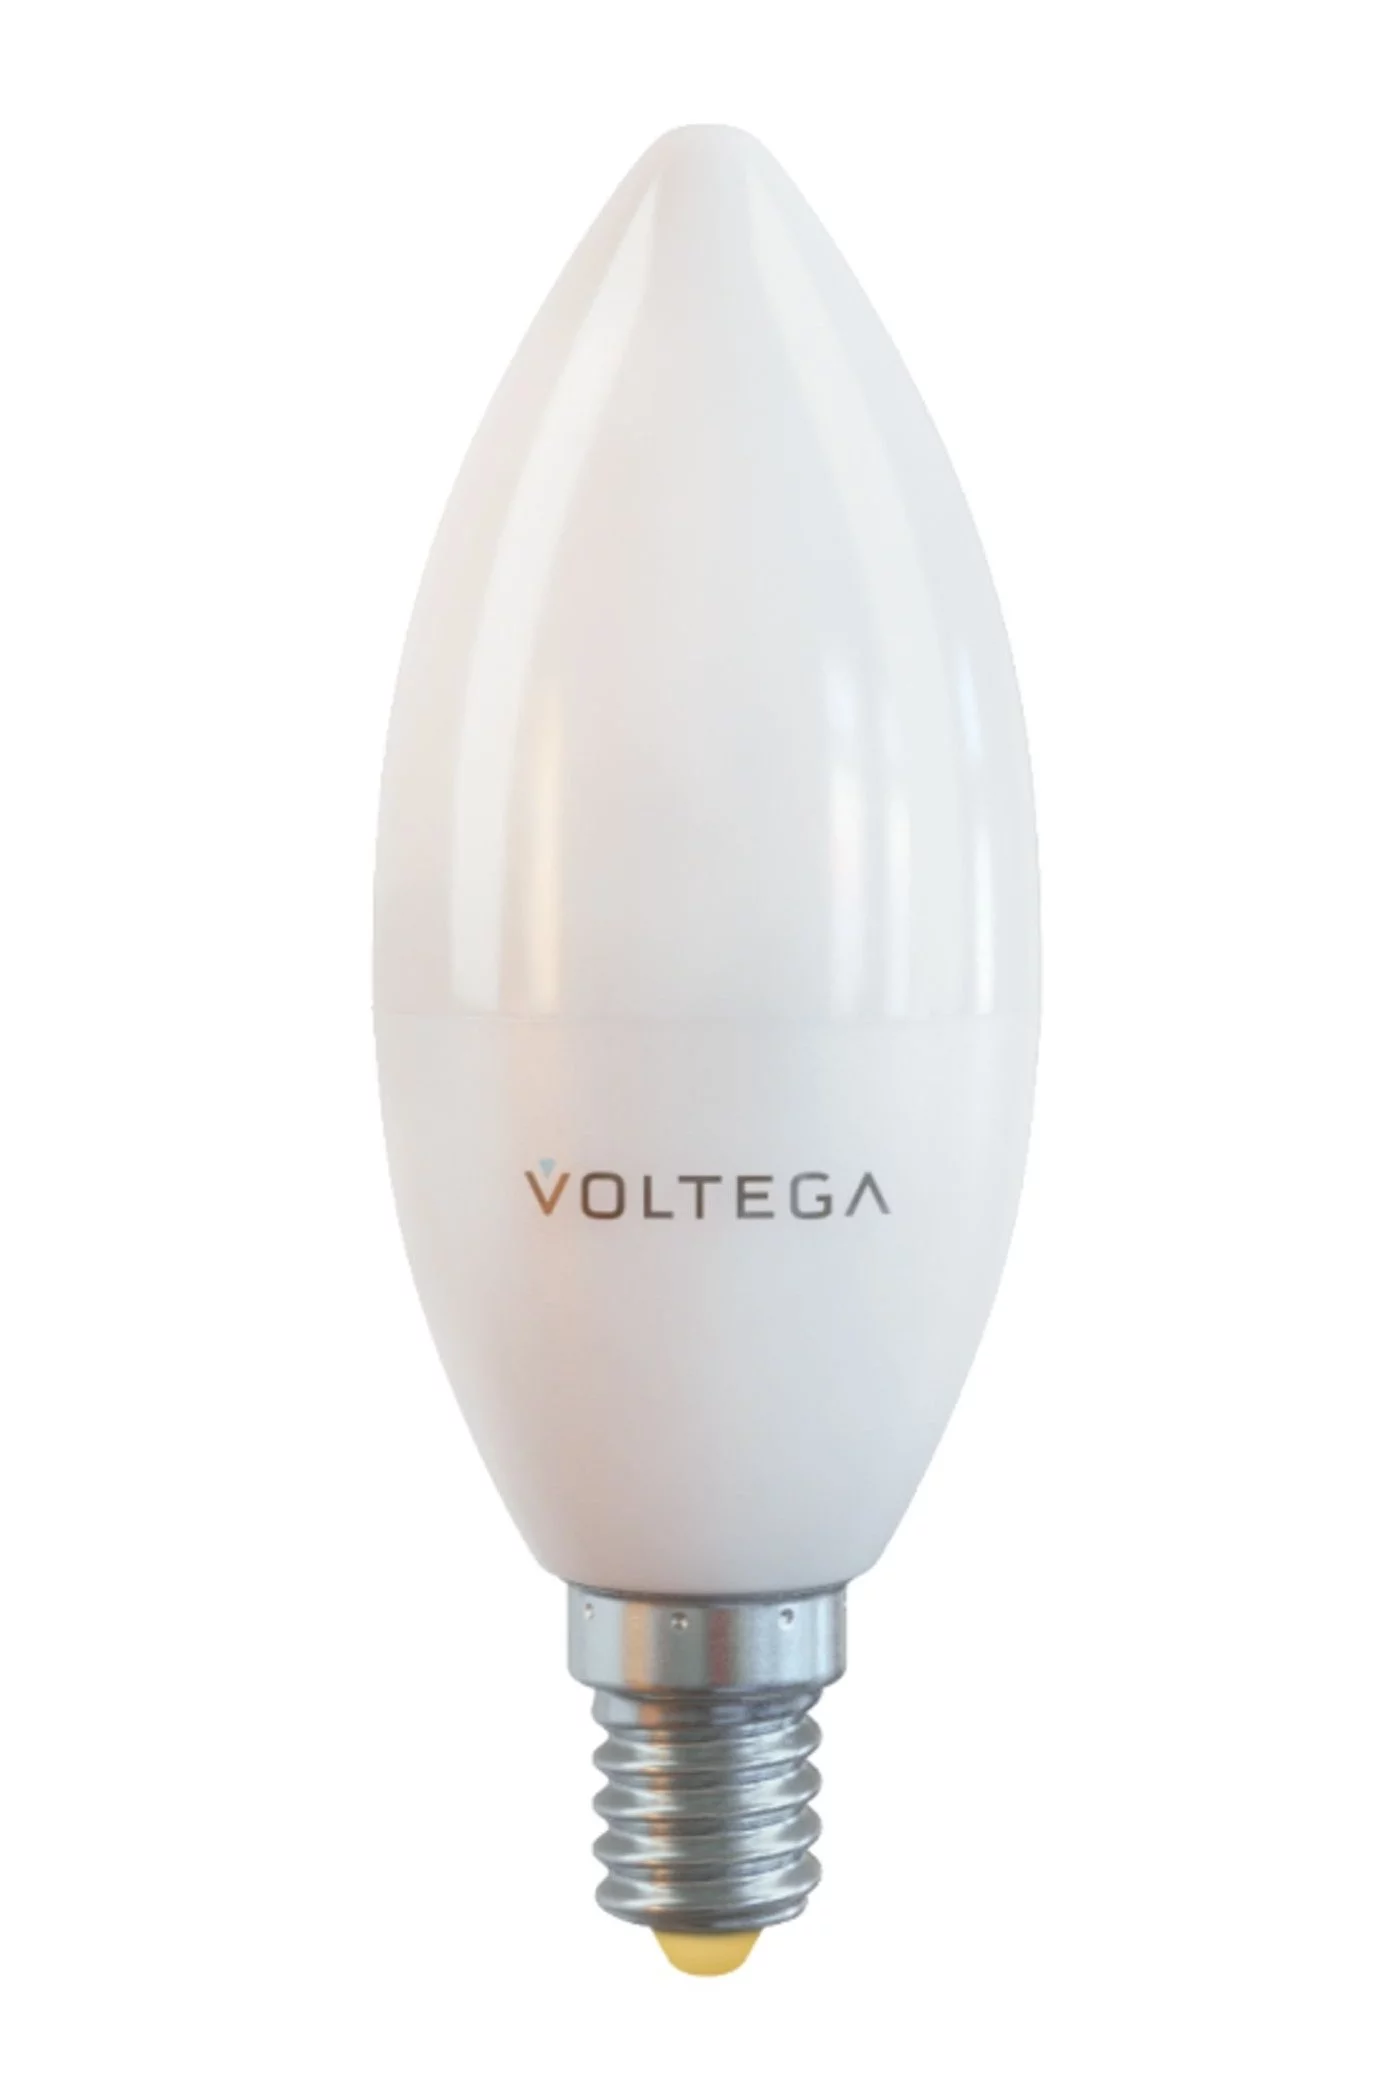   
                        Лампа VOLTEGA   17040    
                        .  
                                                                                                Материал: Пластик.                          фото 1